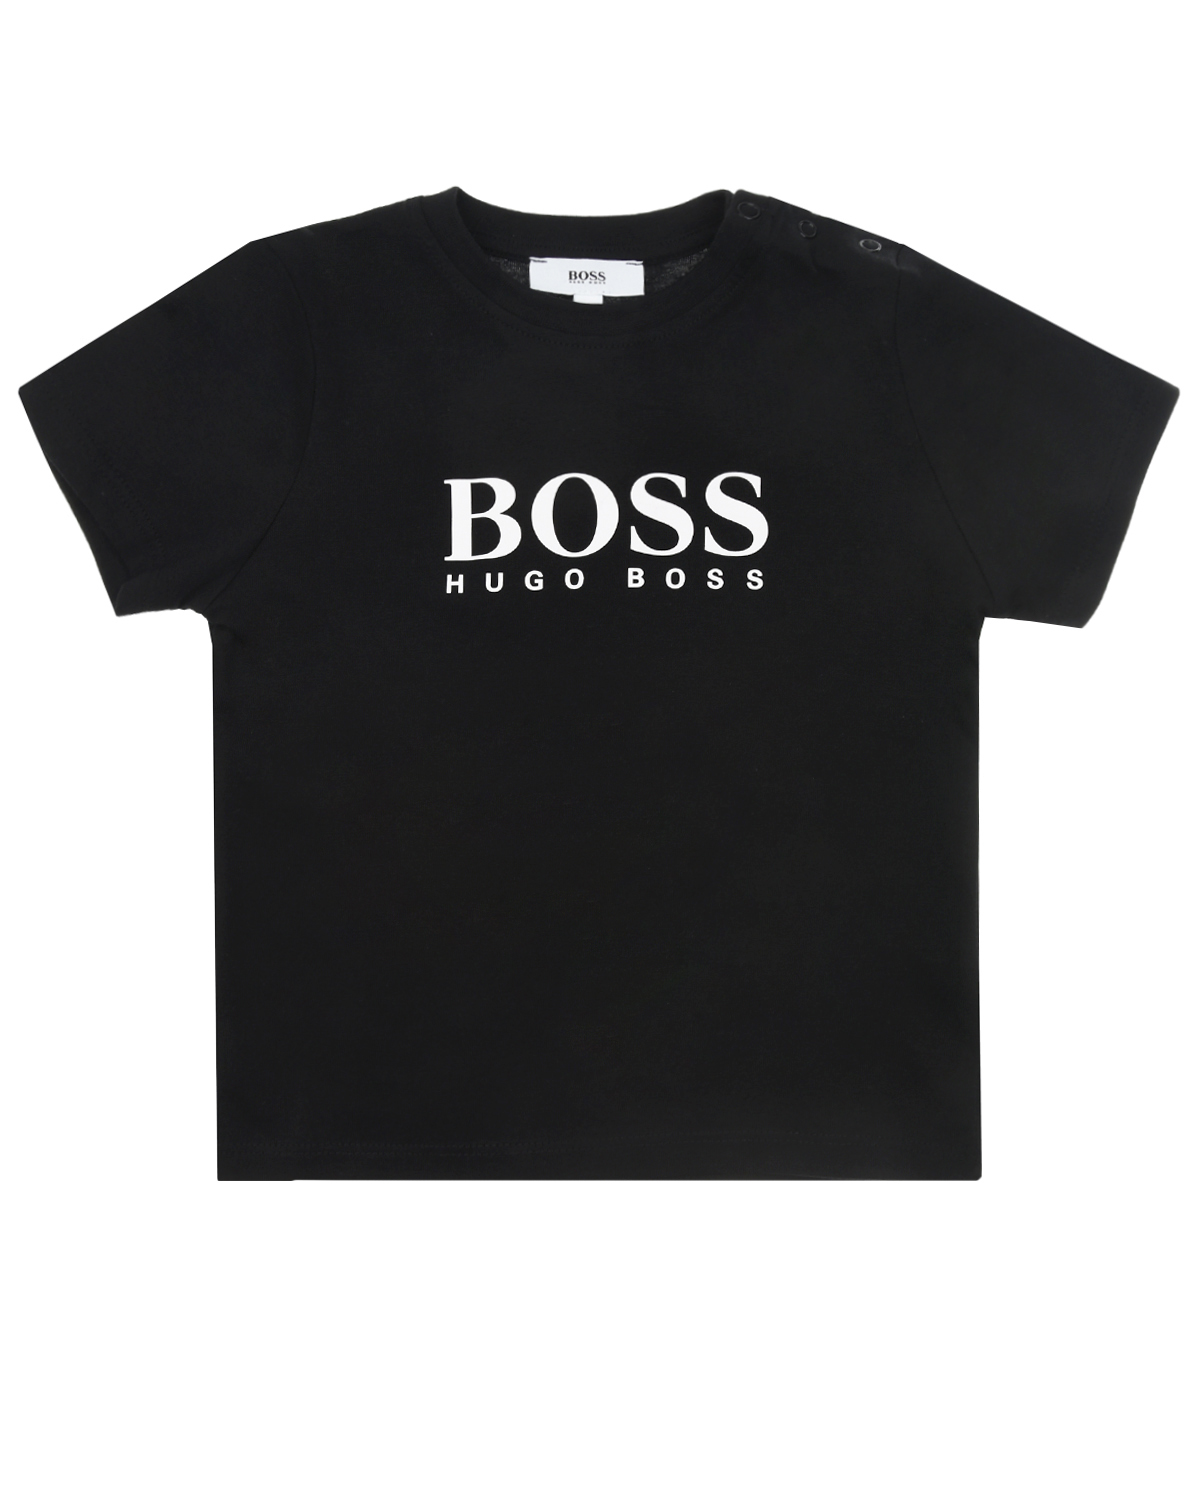 Купить Черная футболка с белым логотипом Hugo Boss, Черный, 100%хлопок, 96%хлопок+4%эластан